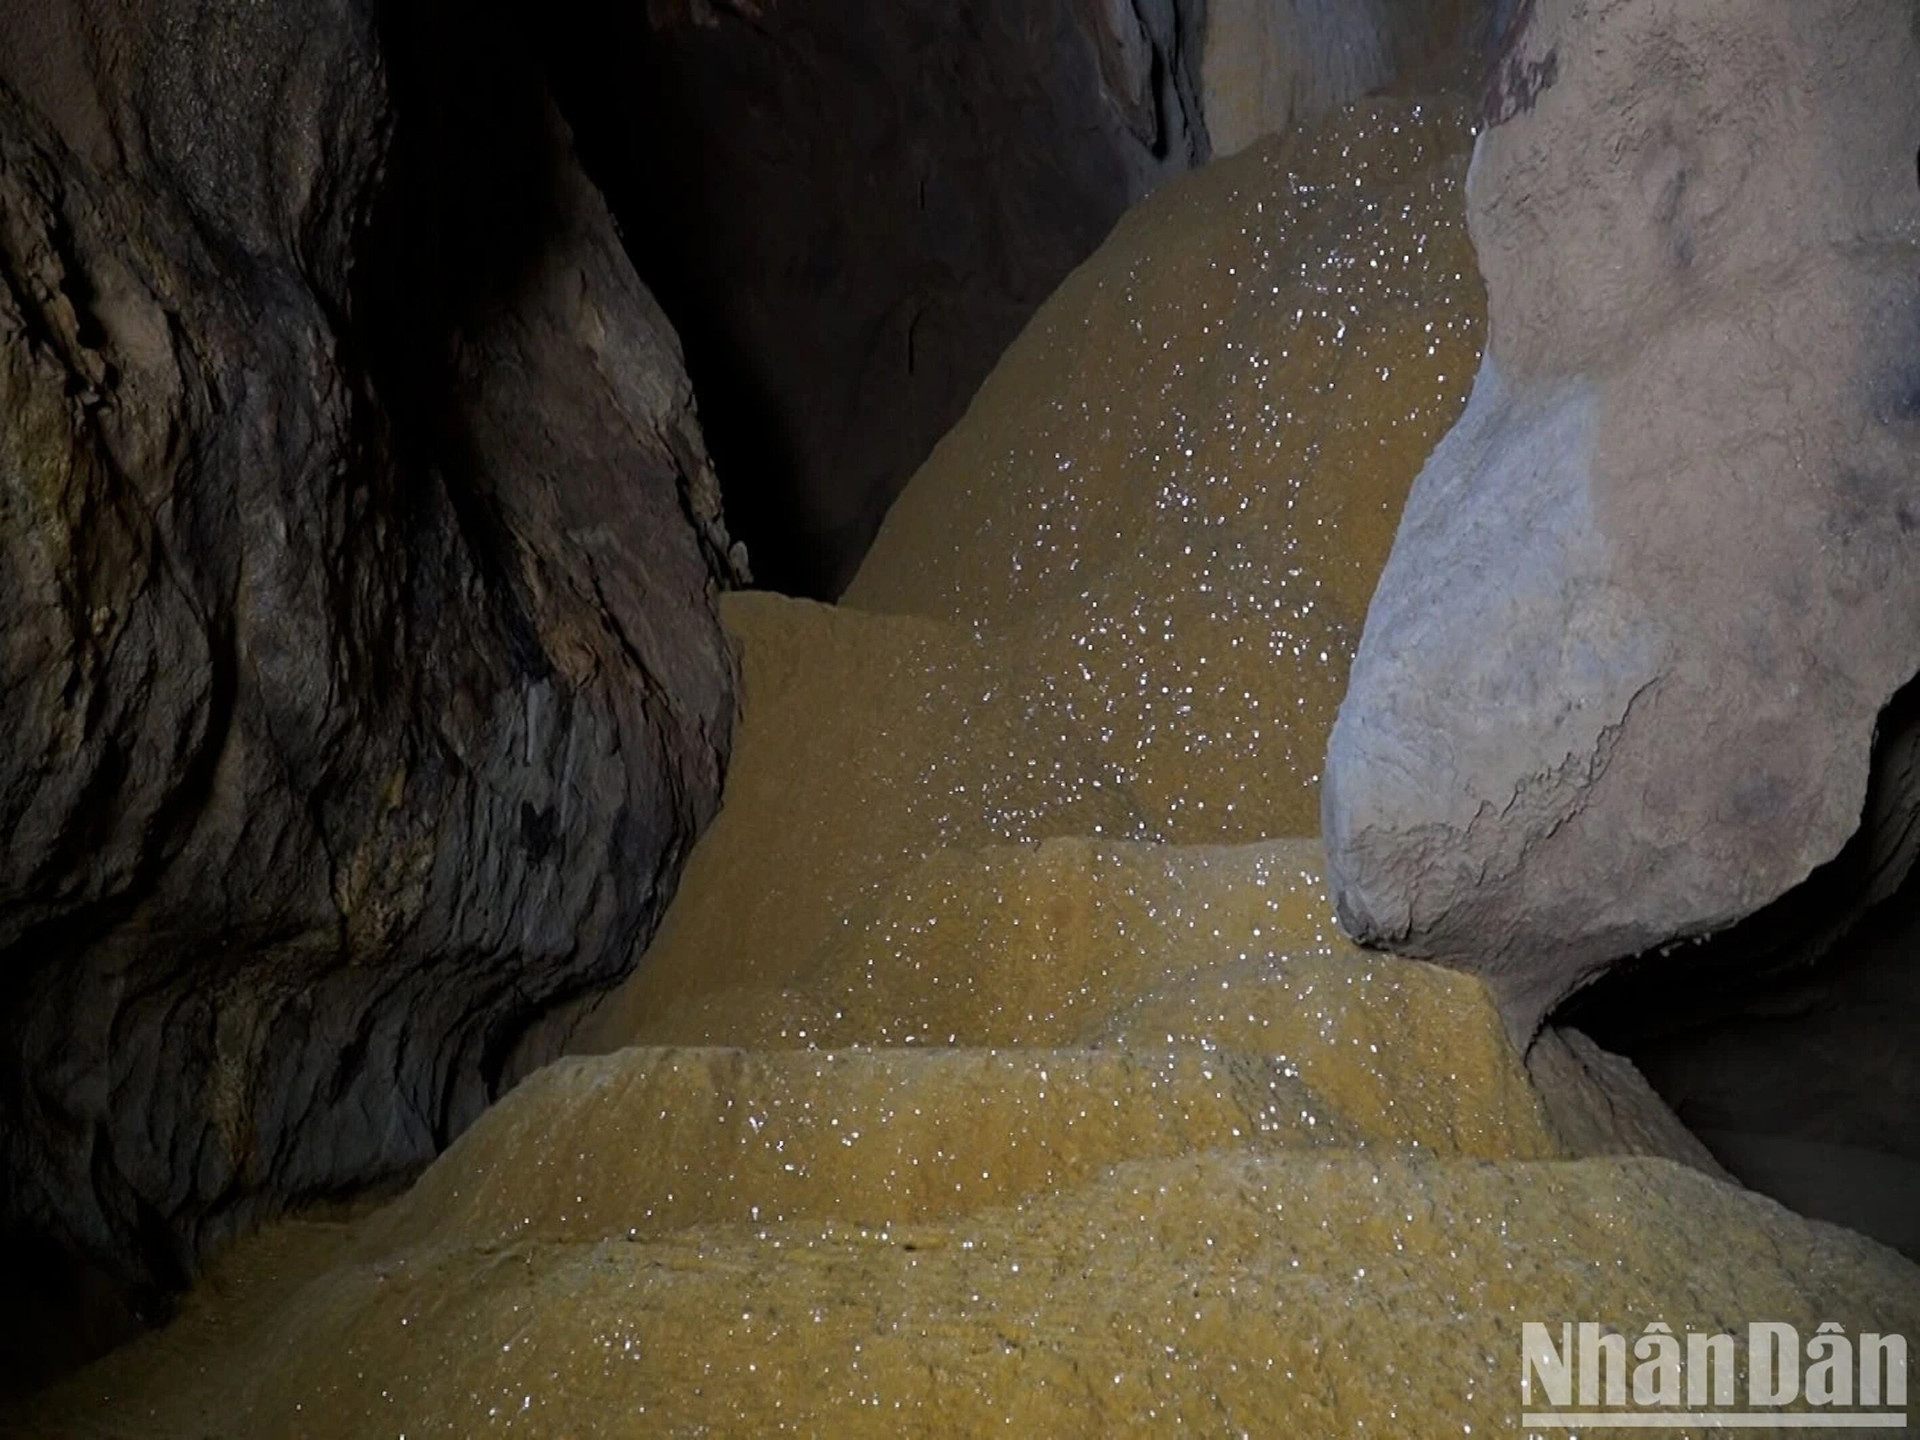 Dọc đường trong hang động như lên cõi tiên với những phiến thạch nhũ màu vàng mang hình người rất ấn tượng, hấp dẫn, pha lẫn kỳ bí.